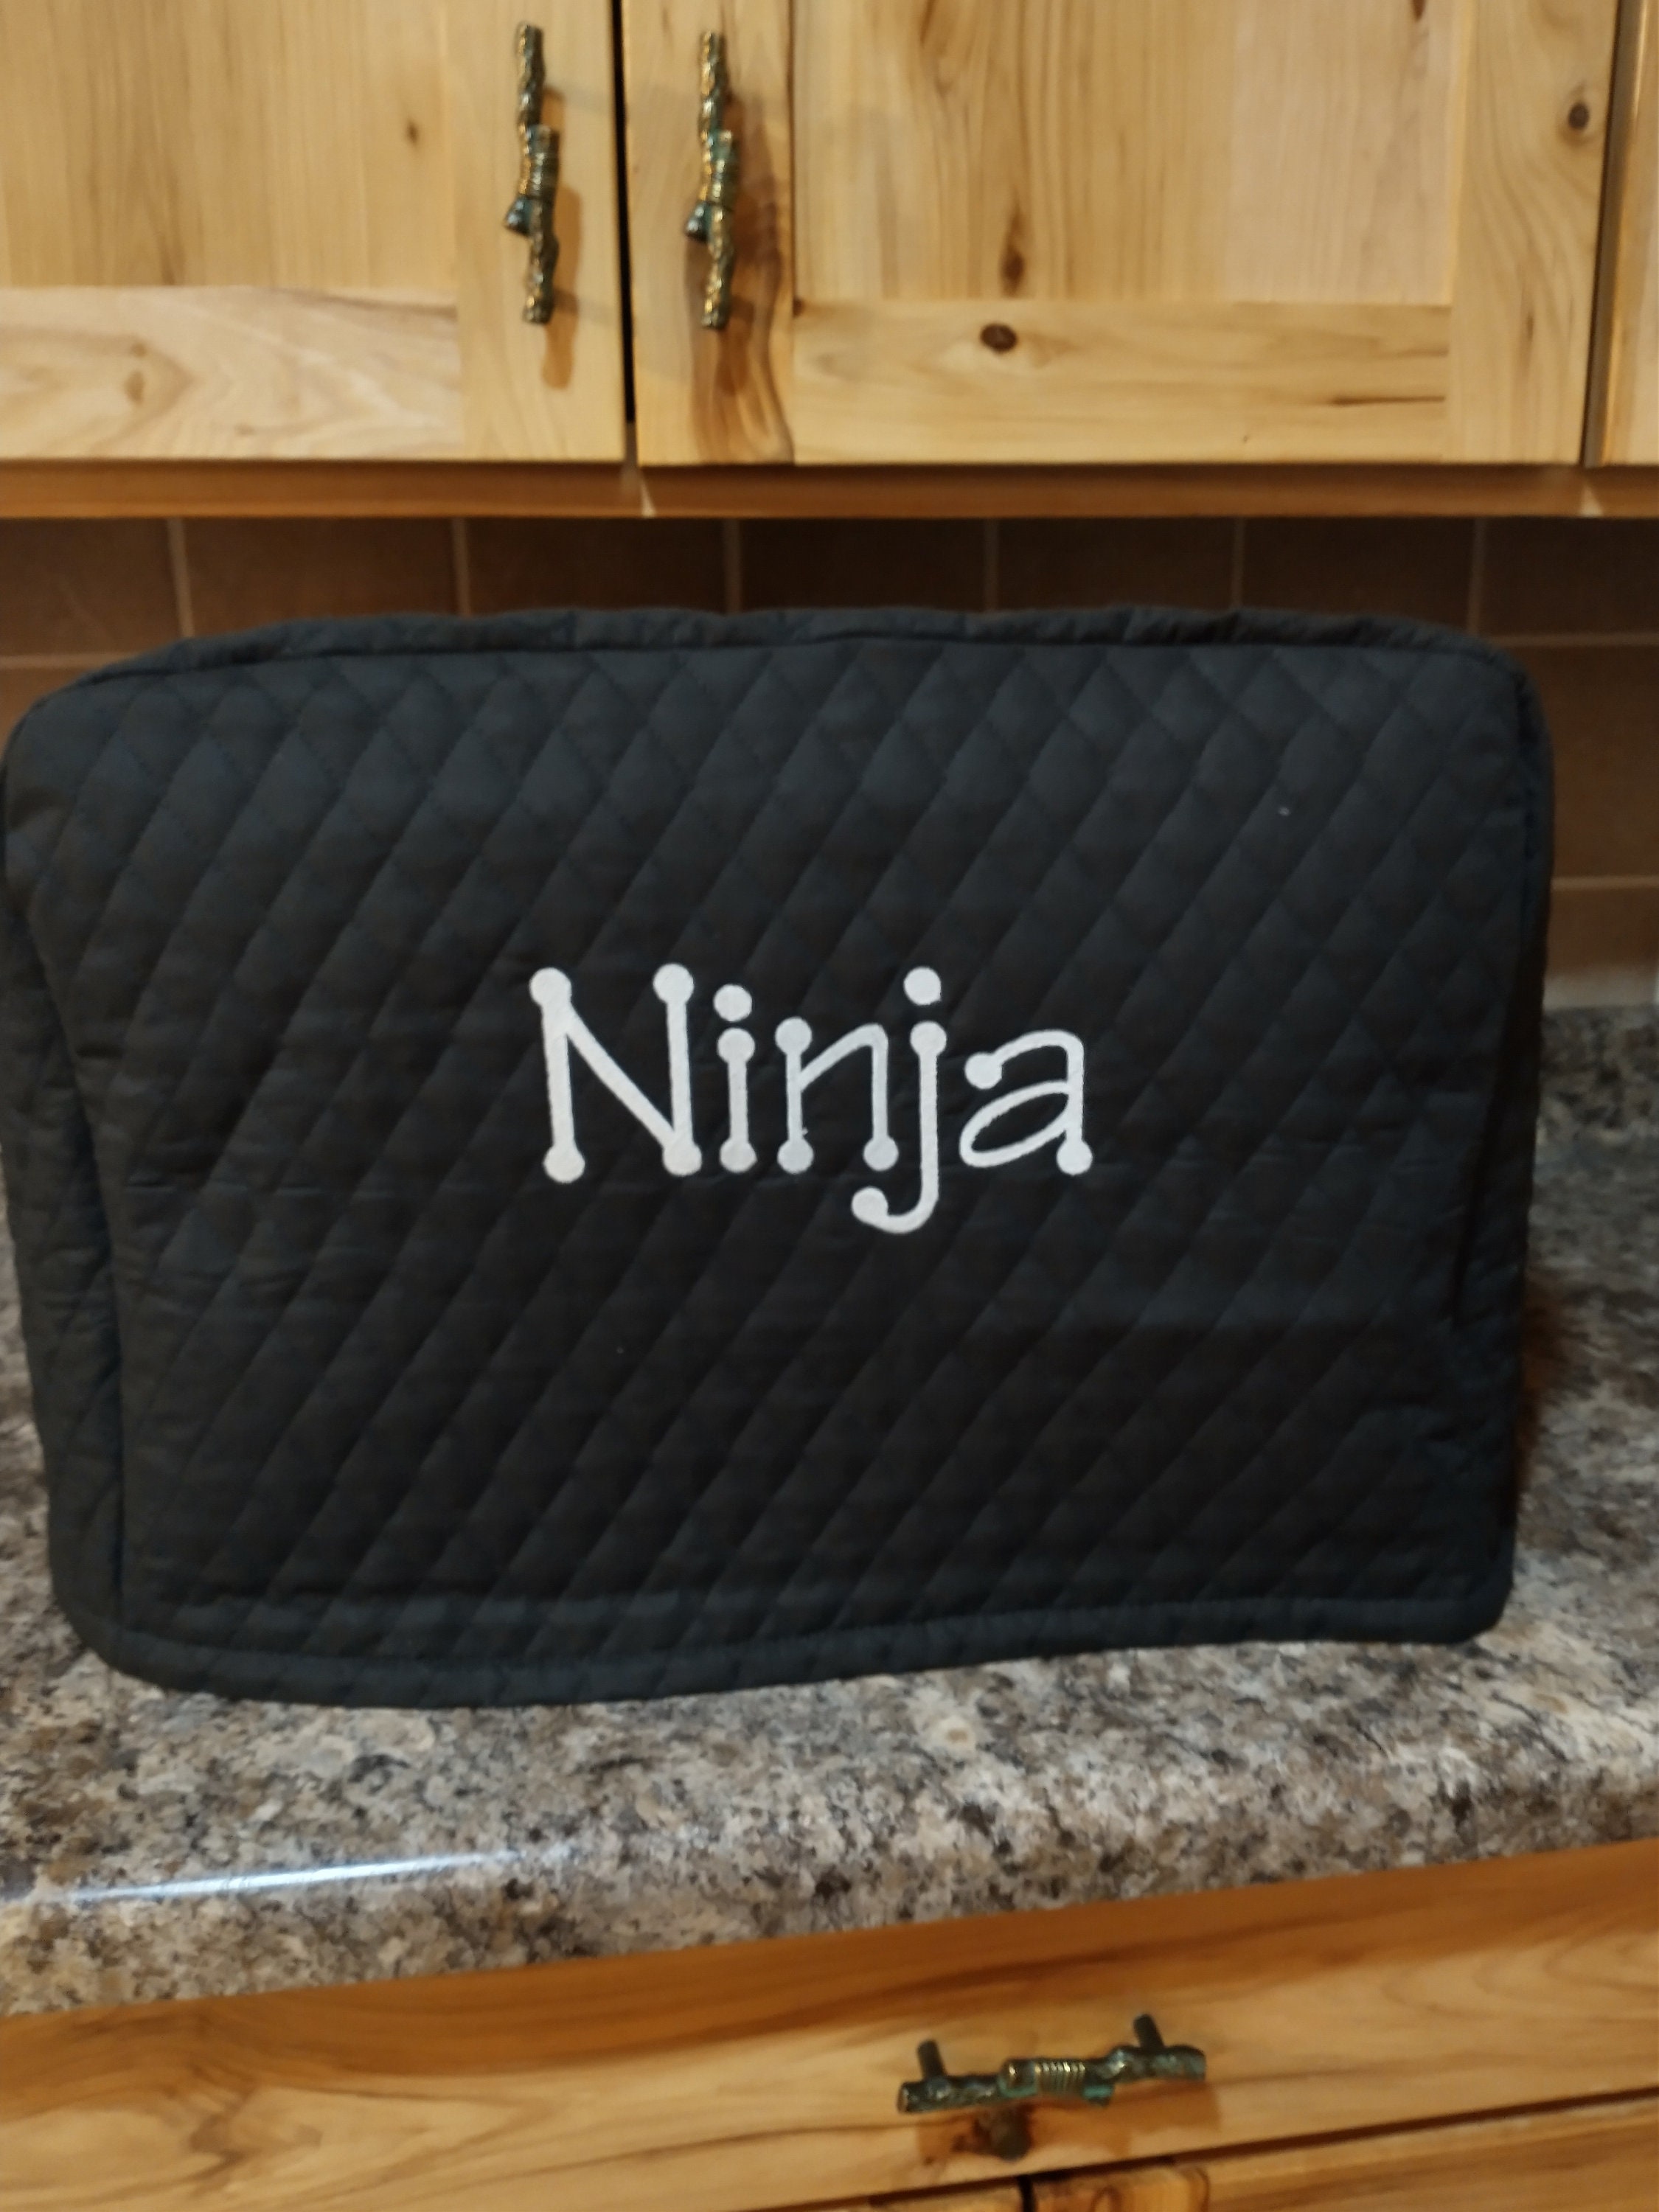 Ninja Foodi 6-in-1 10-qt. XL 2-Basket Air Fryer with Algeria